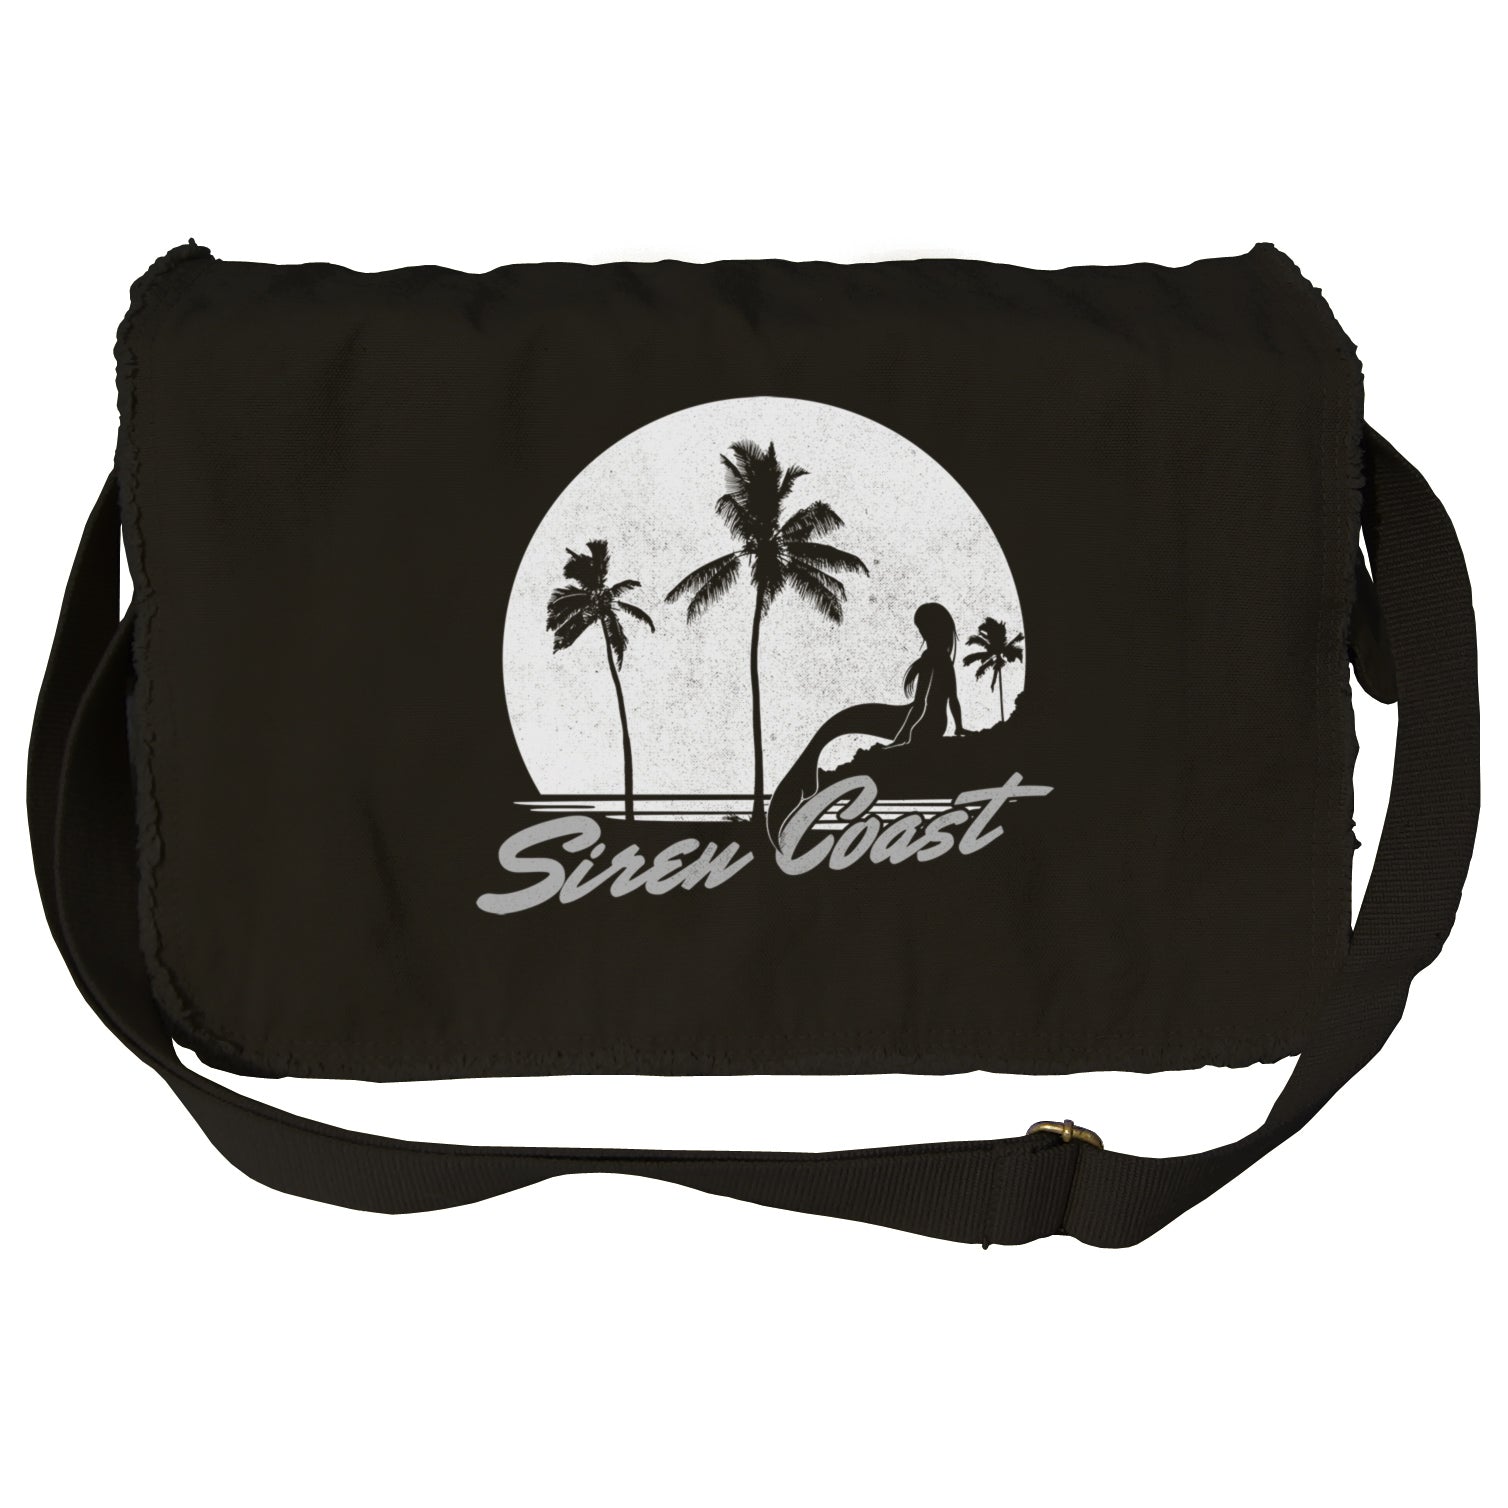 Siren Coast Messenger Bag